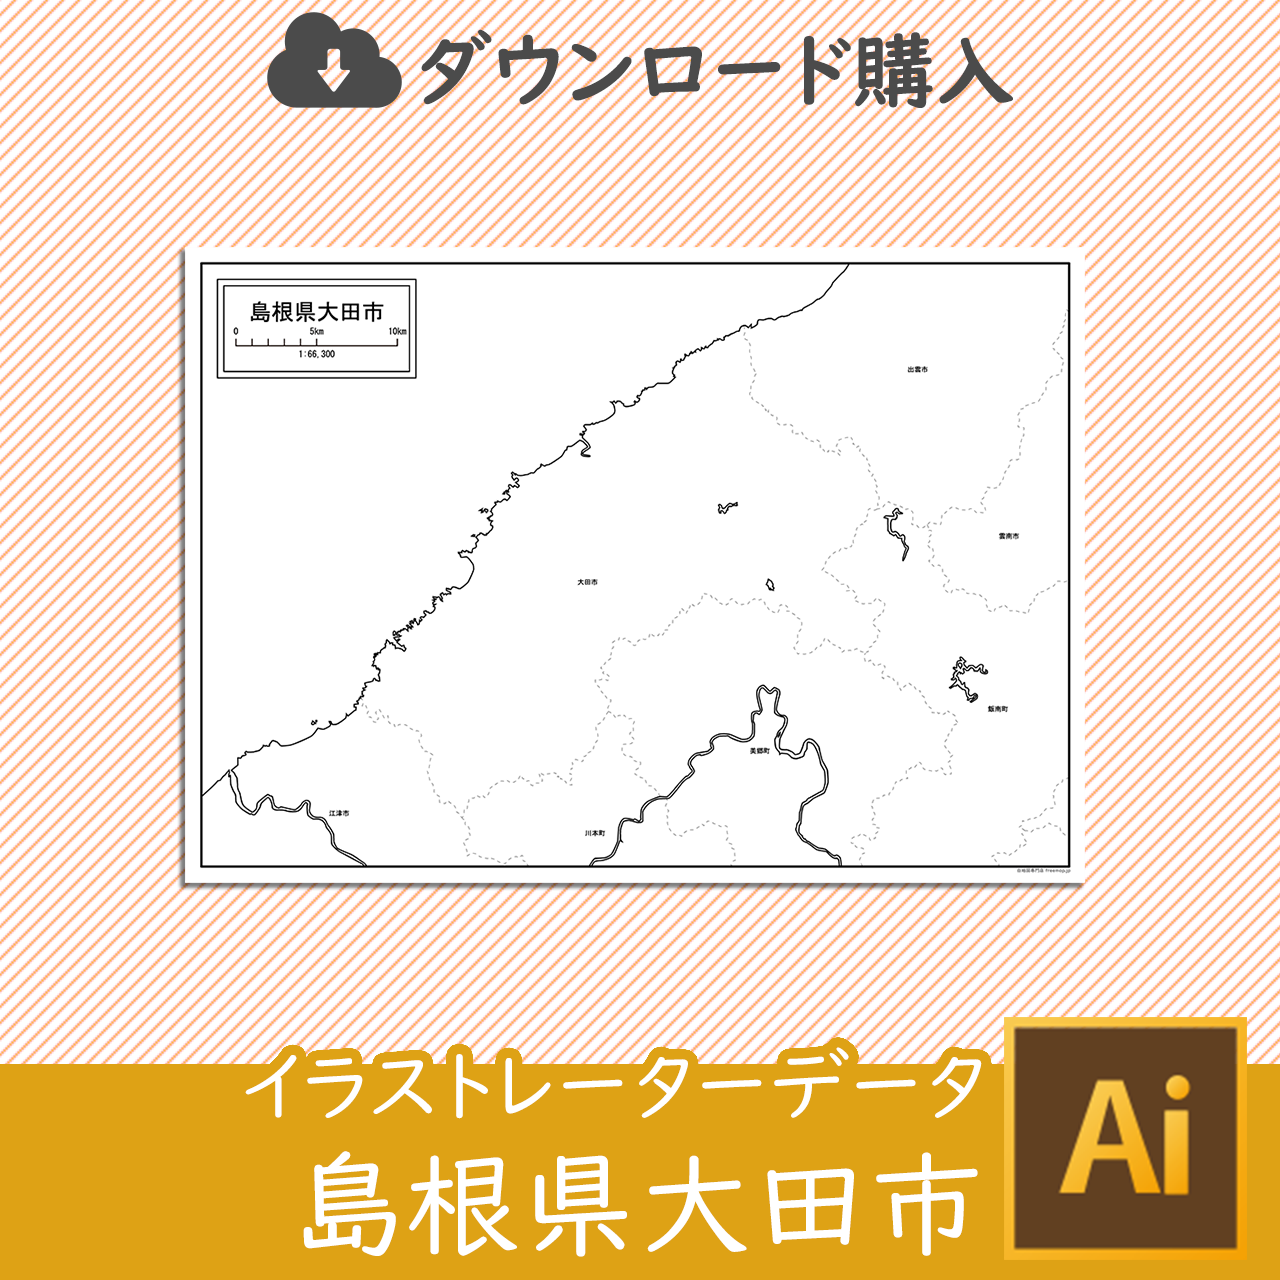 大田市のaiデータのサムネイル画像